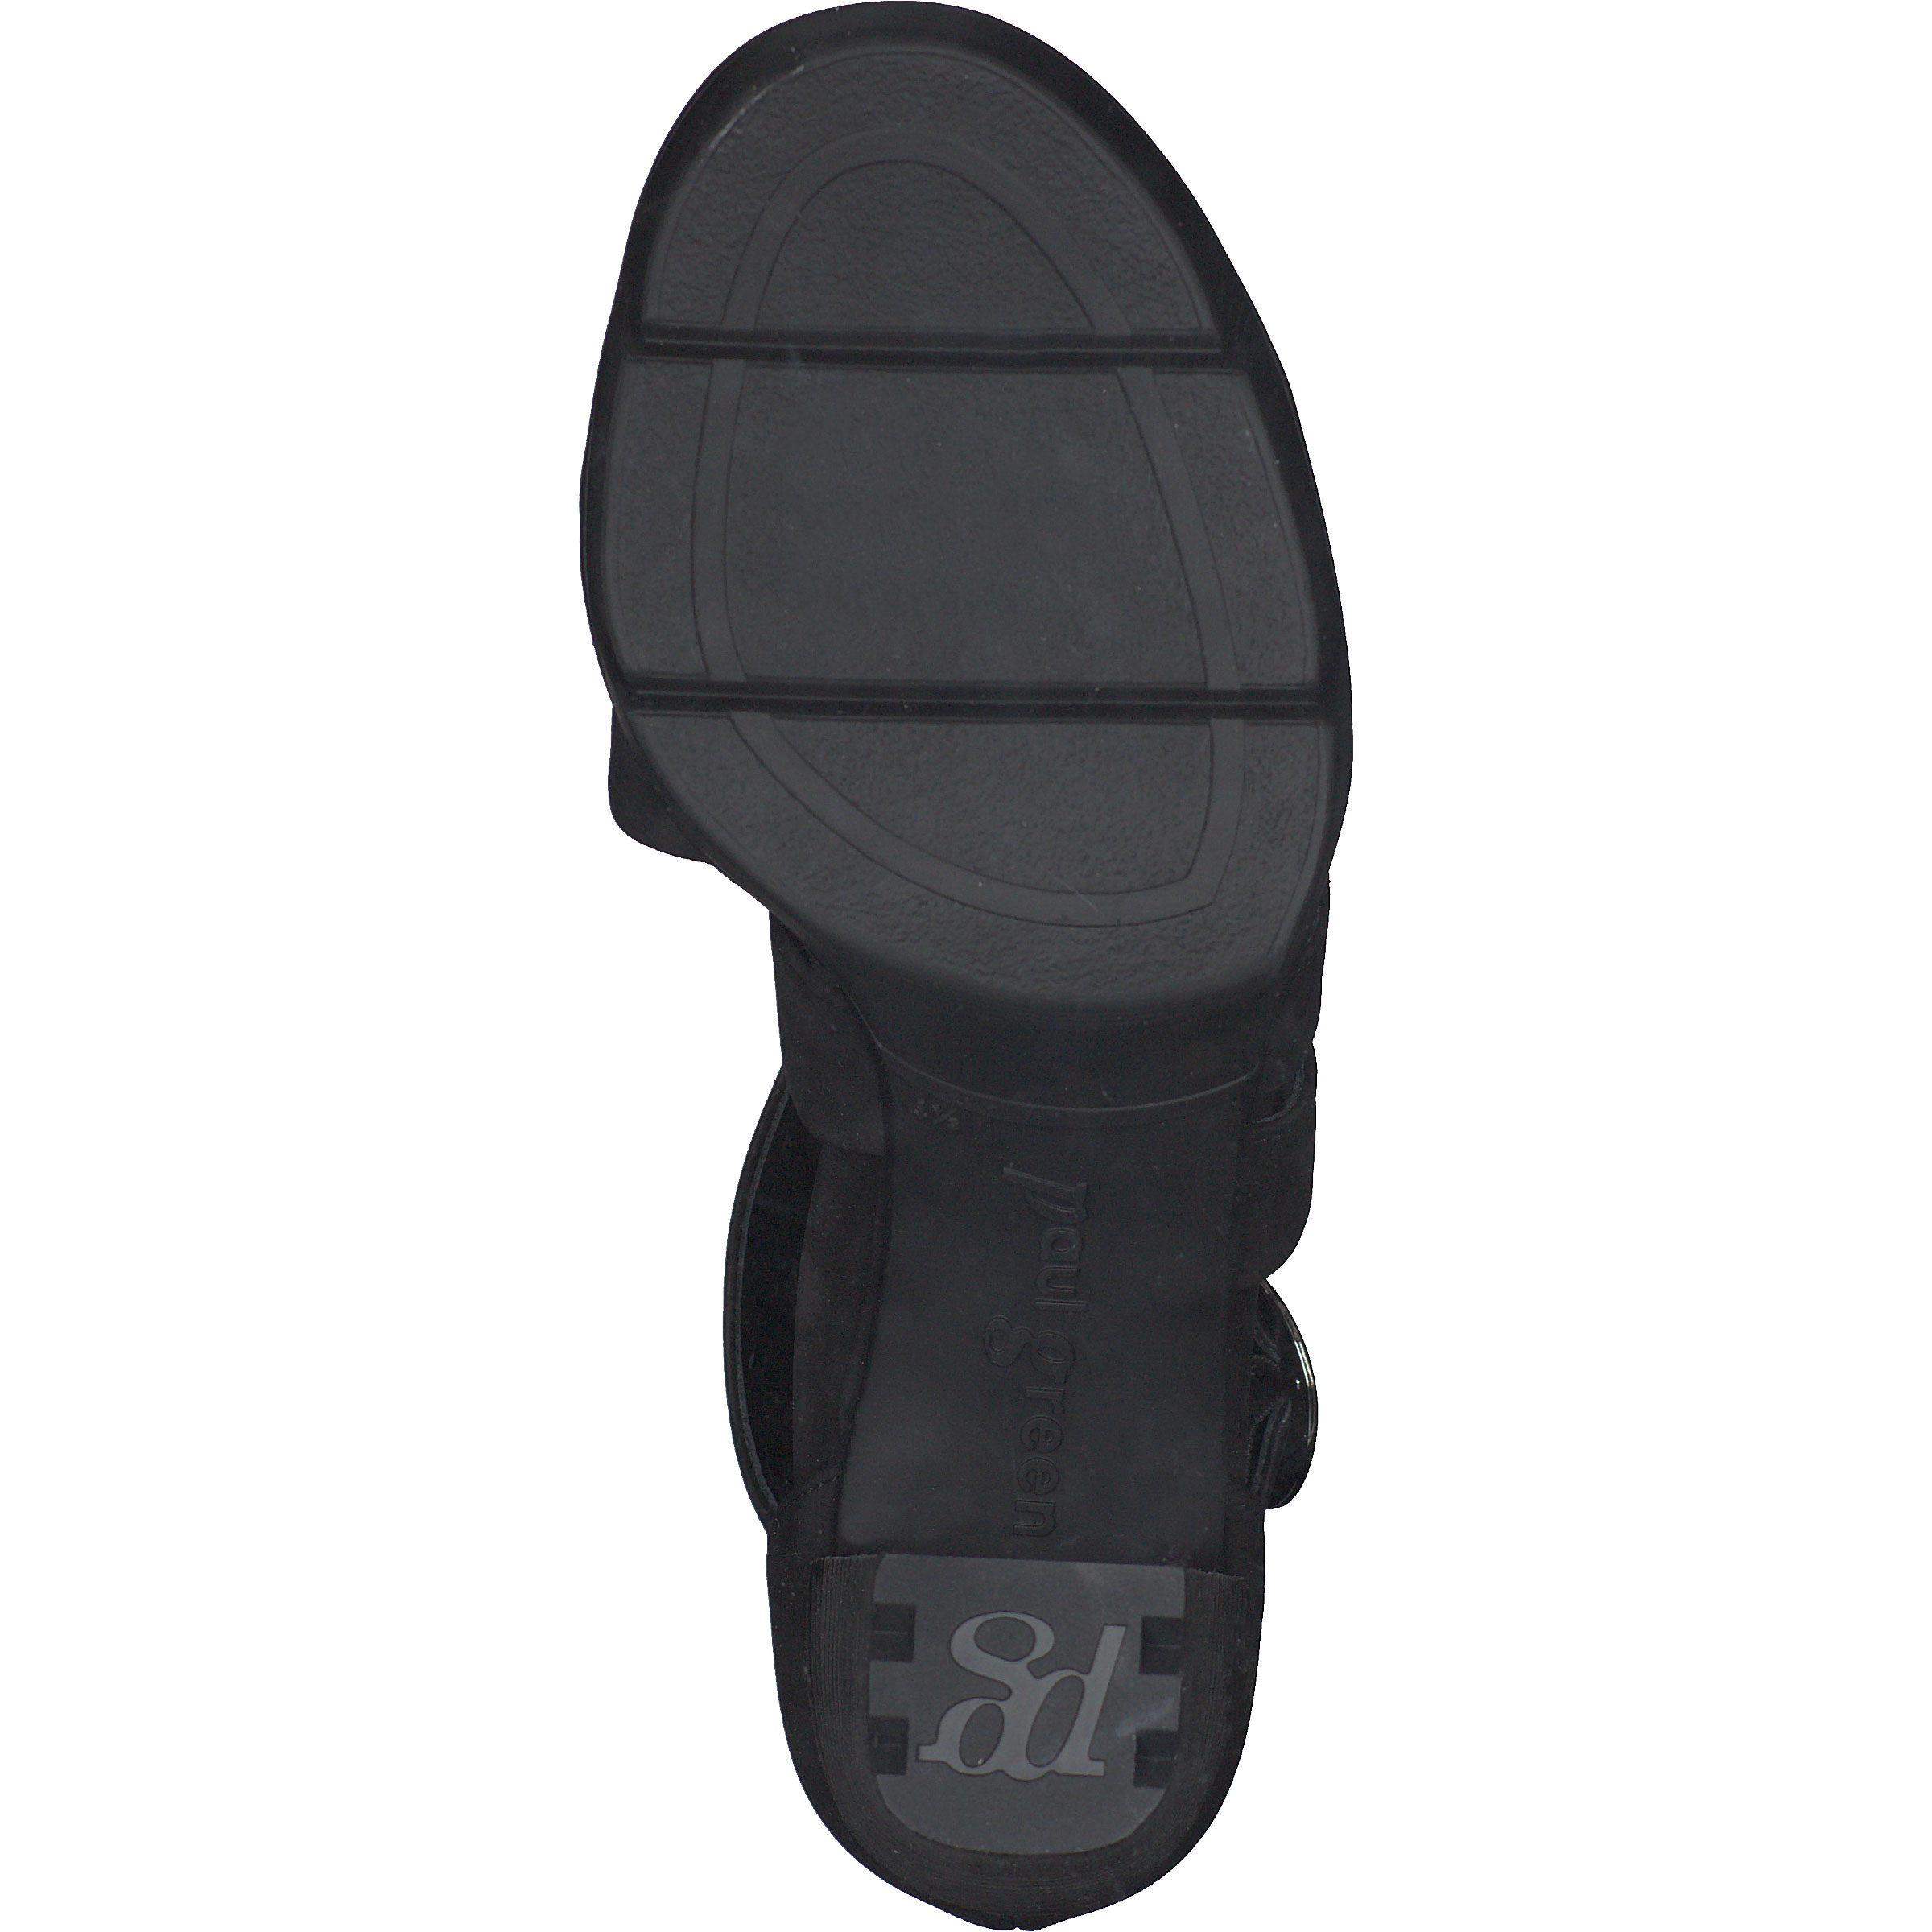 Sandalette - Black Nubuck leather